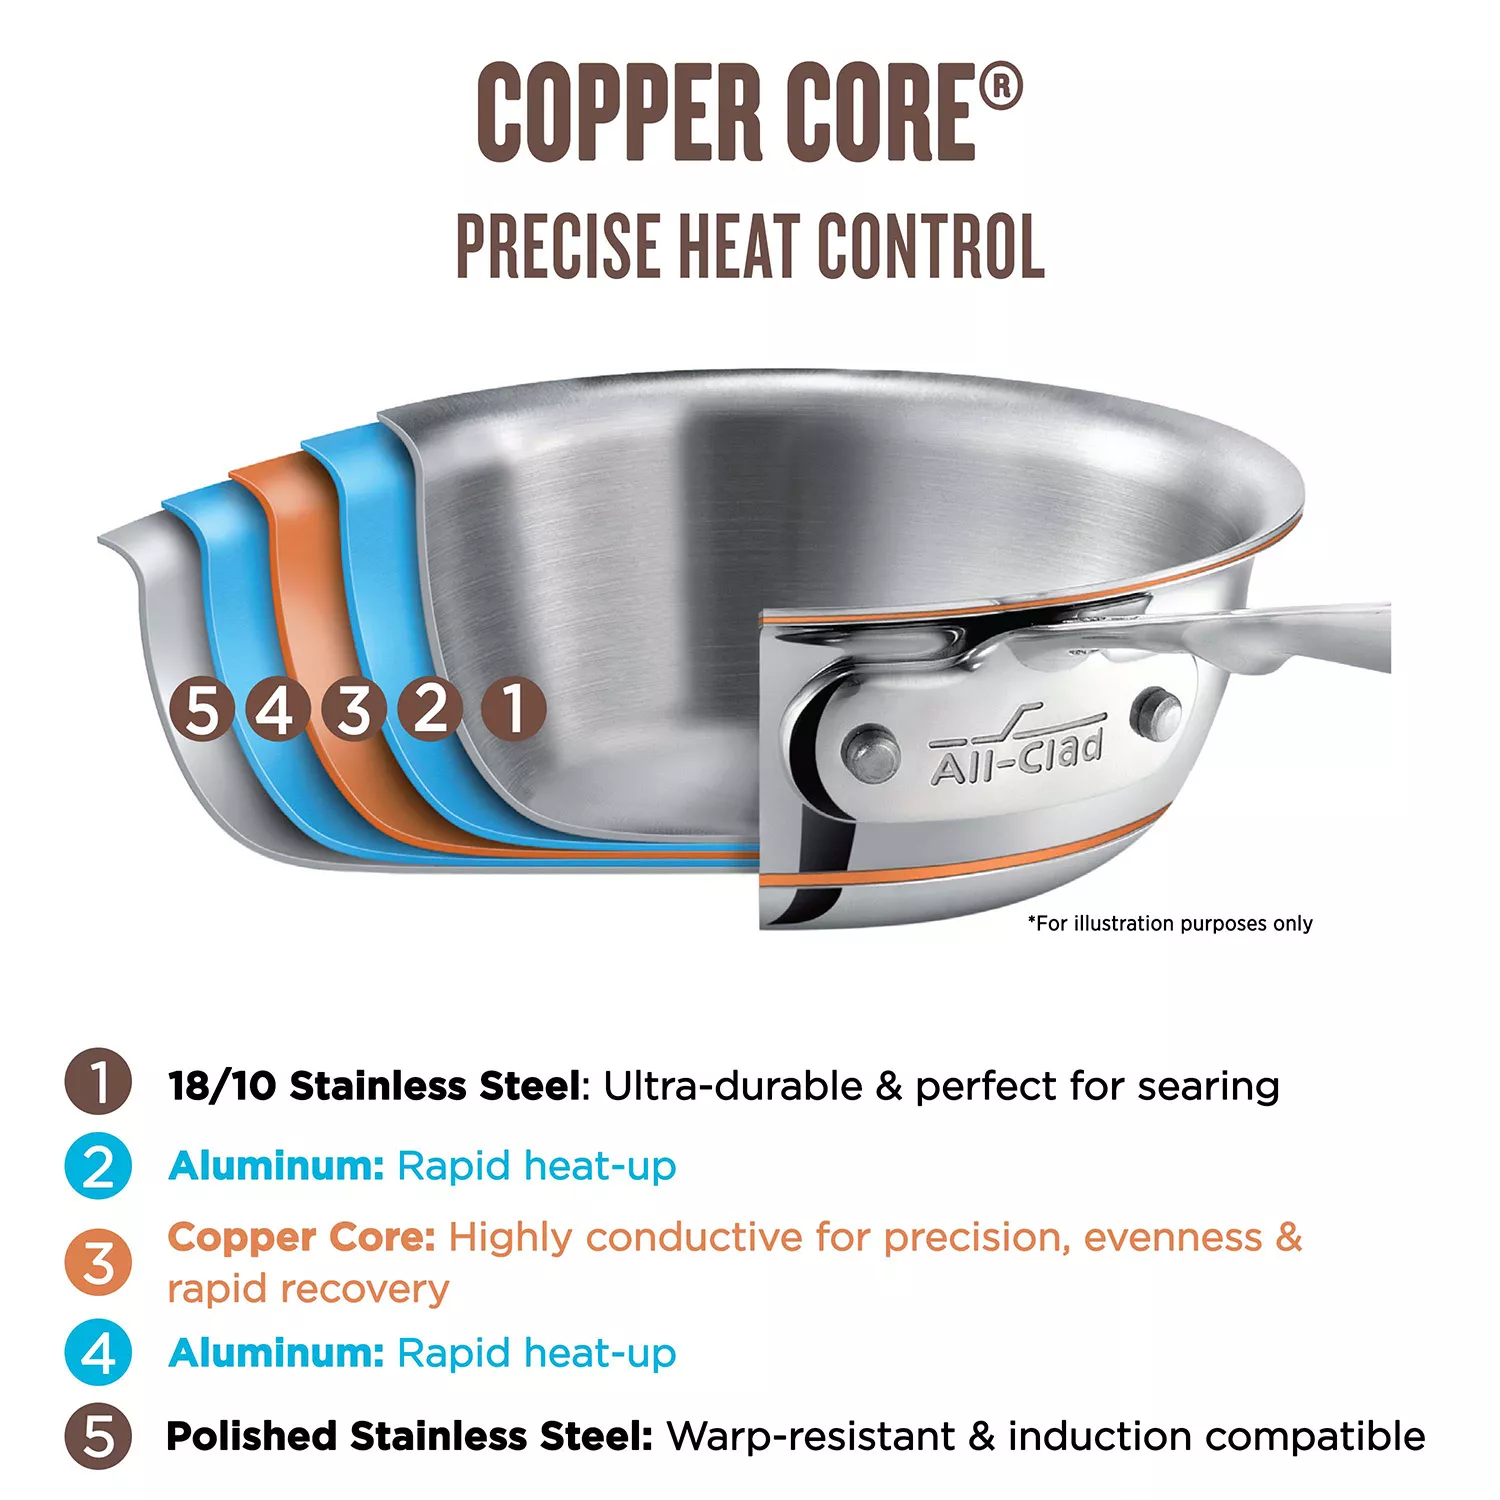 All-Clad Copper Core Saucepan, 4-quart